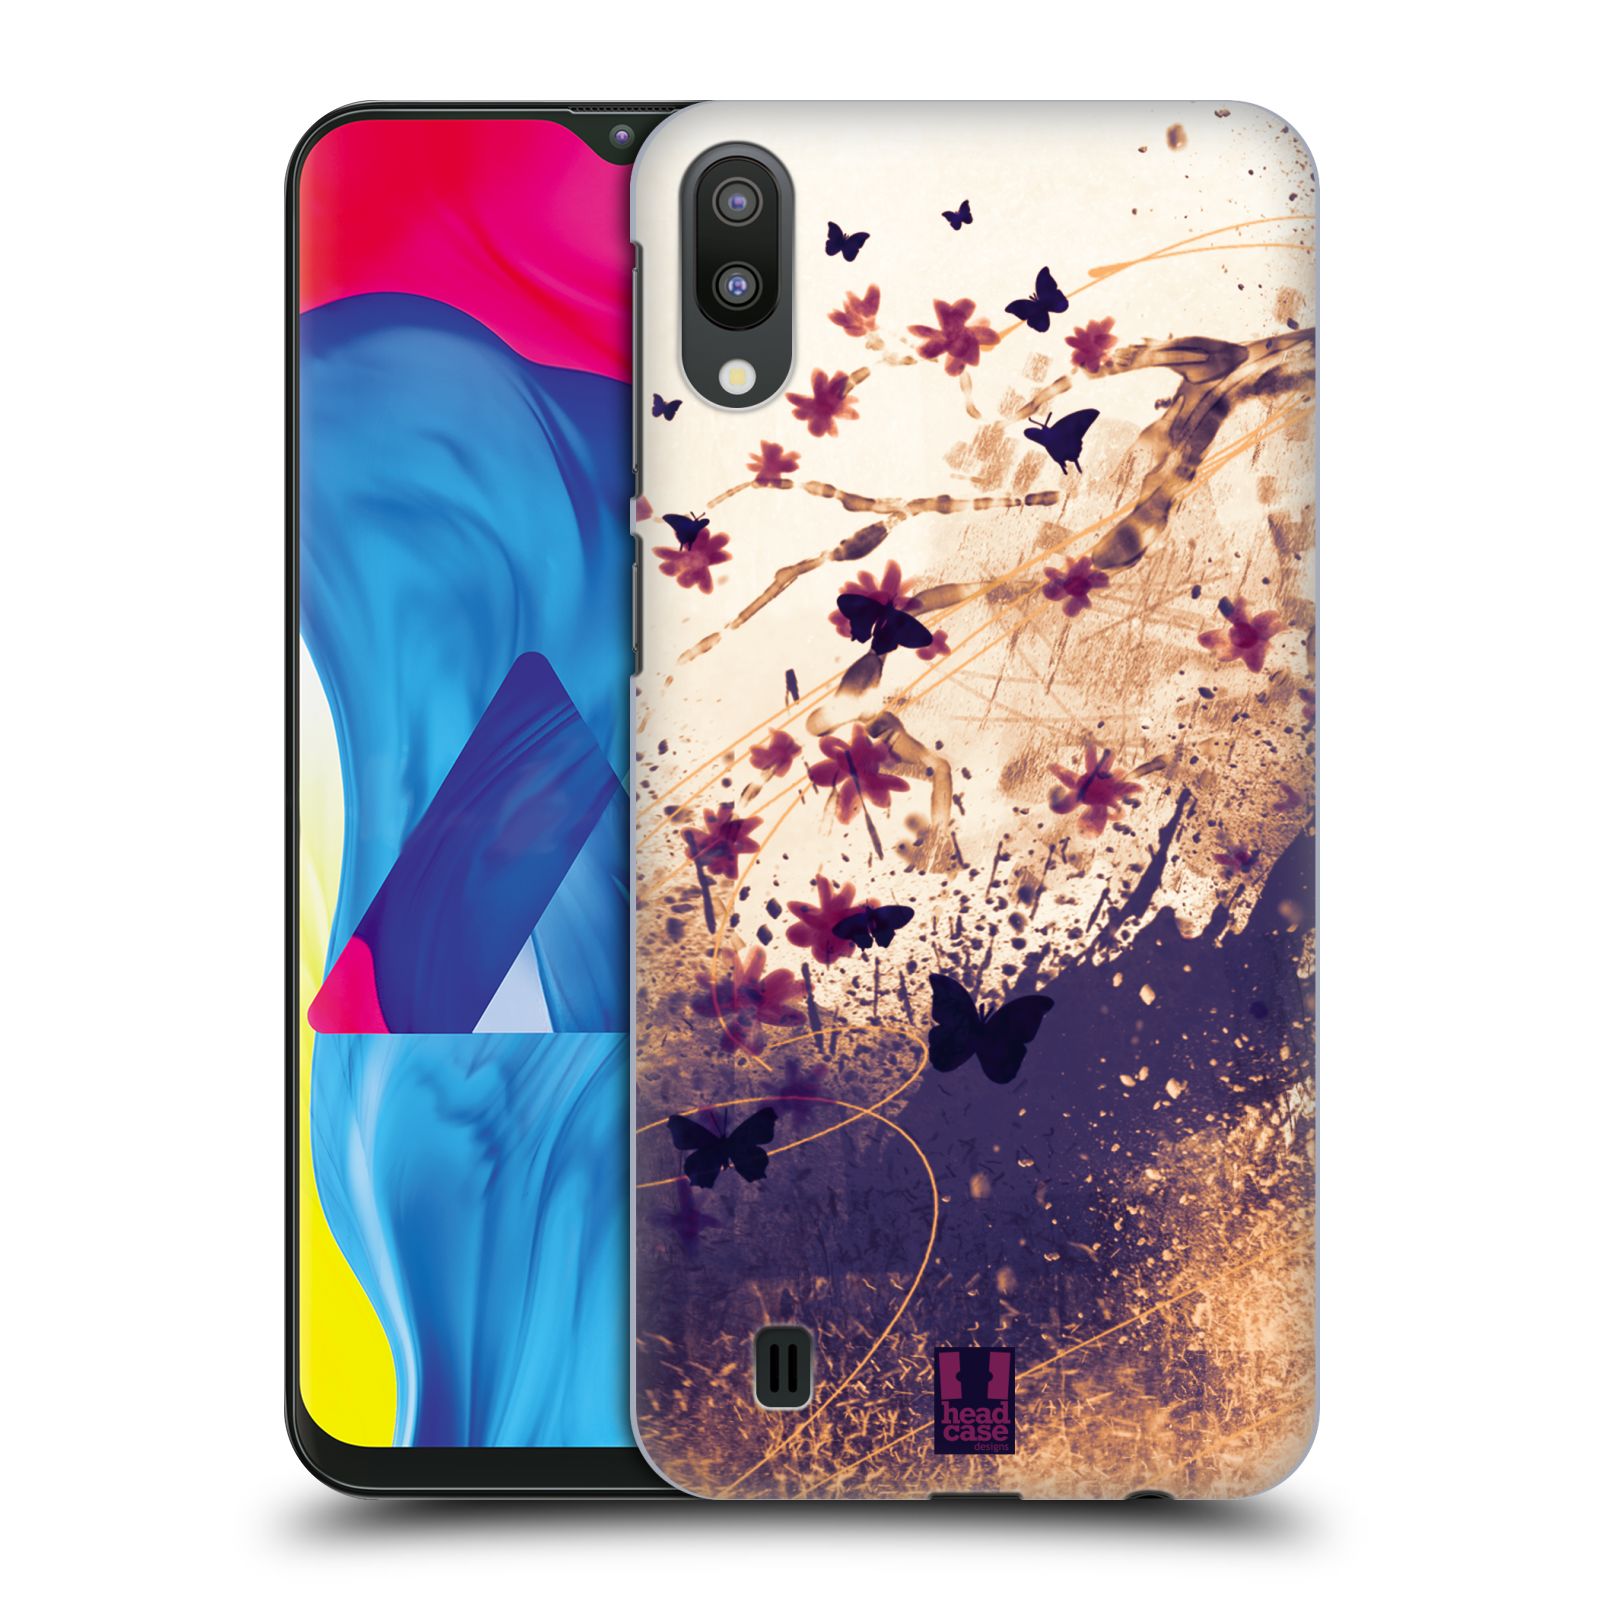 Plastový obal HEAD CASE na mobil Samsung Galaxy M10 vzor Kreslené barevné květiny KVĚTY A MOTÝLCI